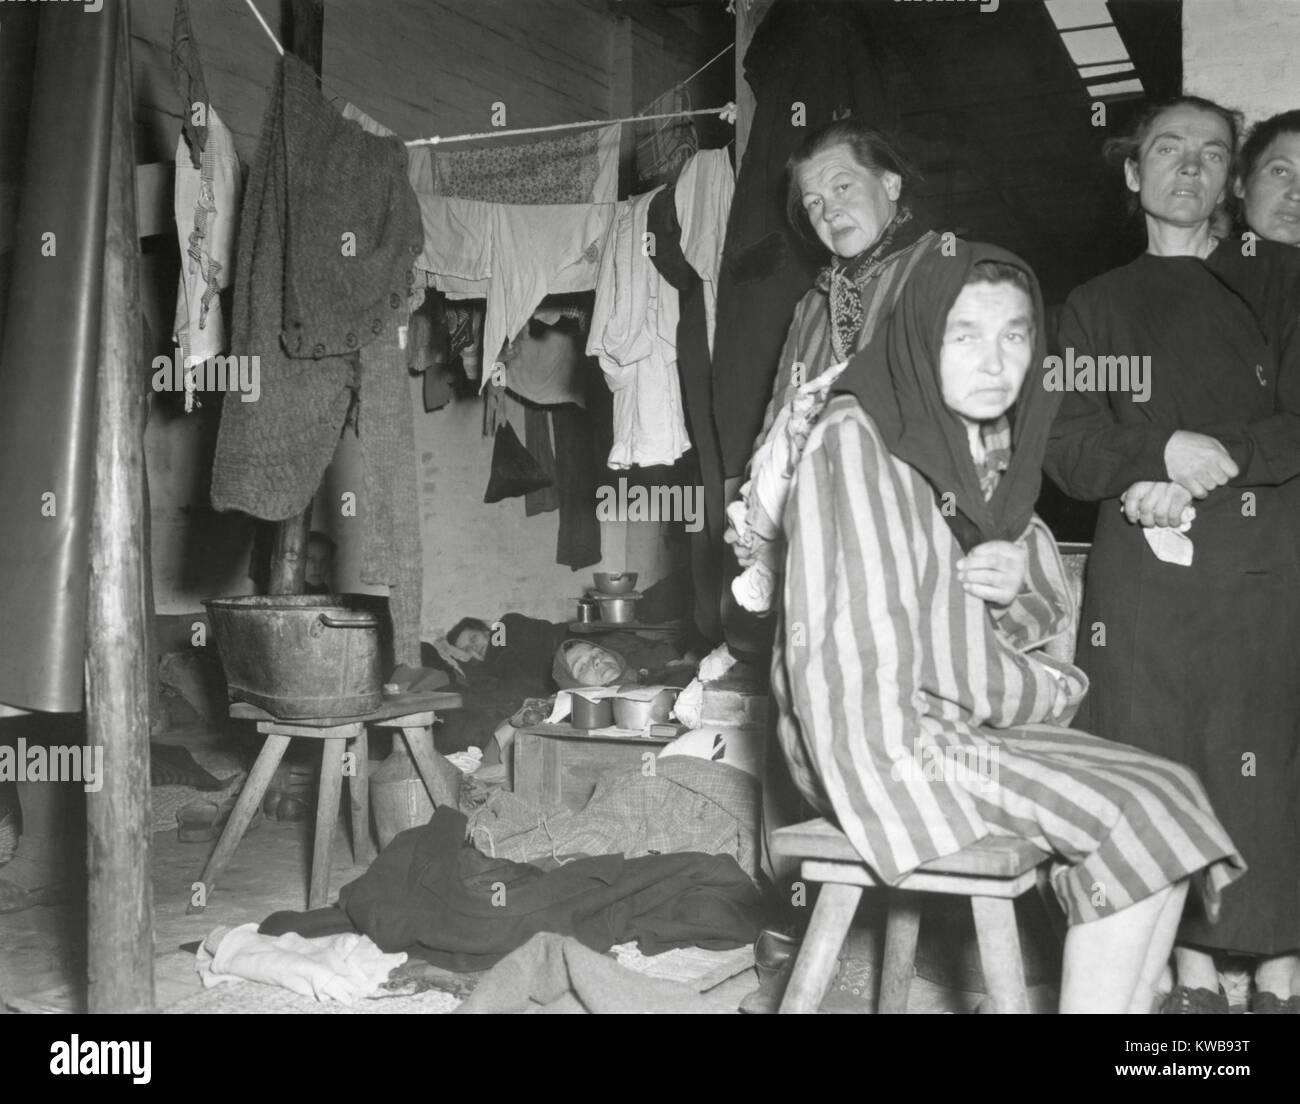 Les femmes libérées dans leur caserne dans l'ancien camp nazi à Belsen, Allemagne. Les femmes sont devenues des personnes déplacées sous la protection de la 2ème Armée Britannique. Avril 1945, la Première Guerre mondiale 2. (BSLOC   2014 10 178) Banque D'Images